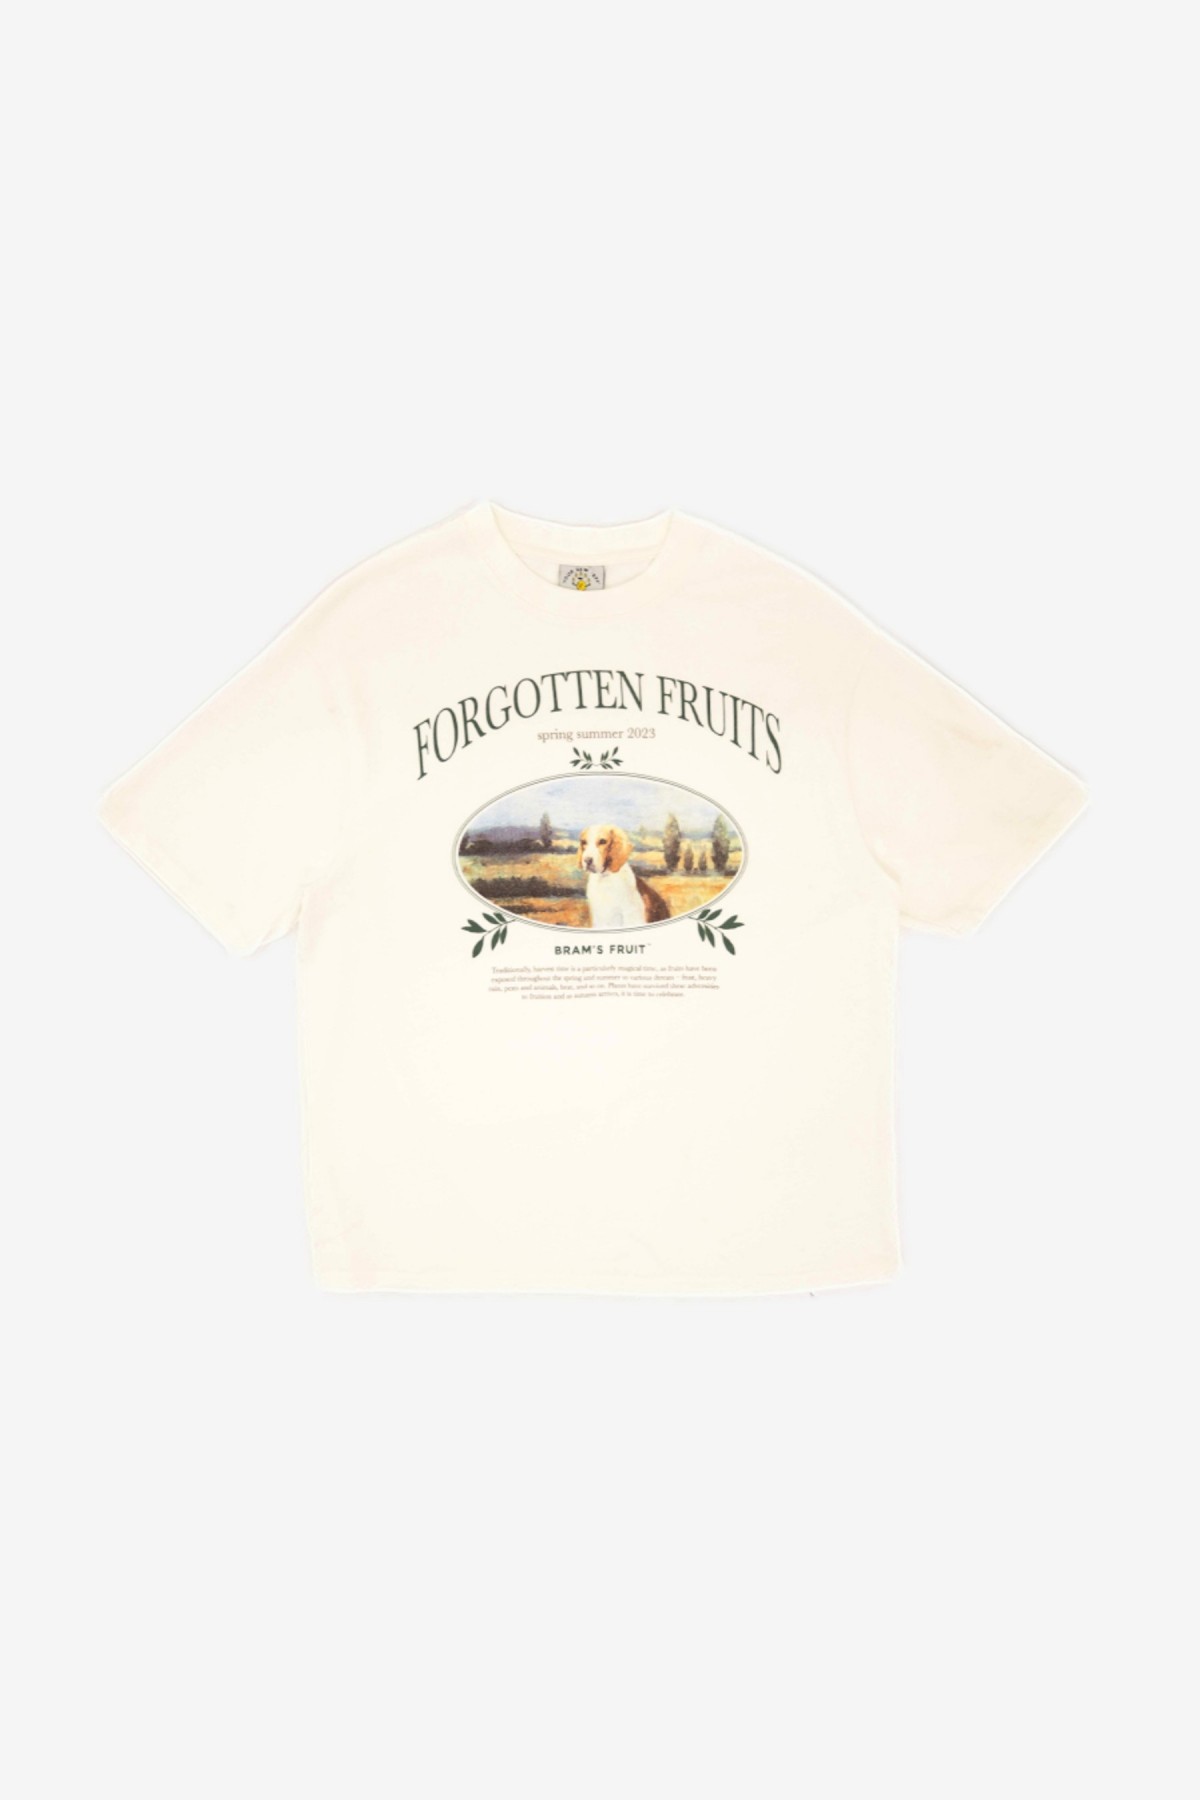 Bram's Fruit Forgotten Fruits Beagle T-Shirt in White